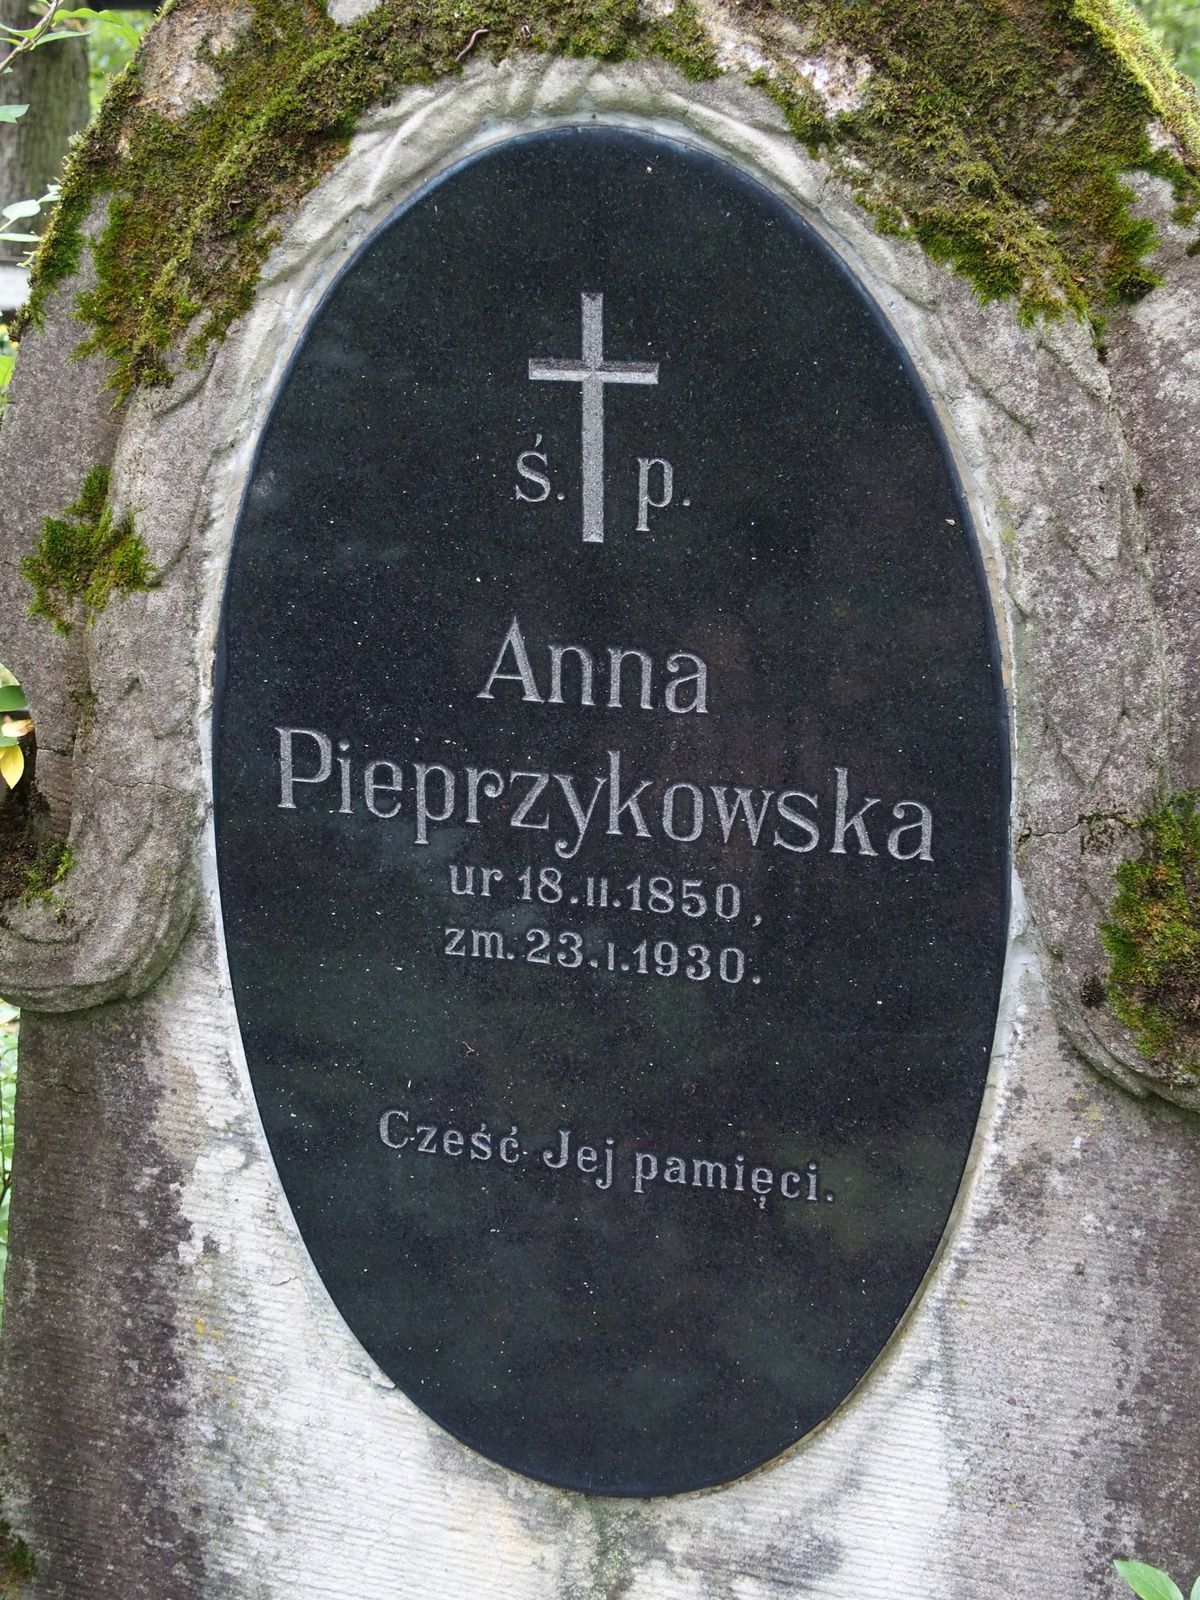 Napis z nagrobka Anny Pieprzykowskiej, cmentarz św. Michała w Rydze, stan z 2021 r.